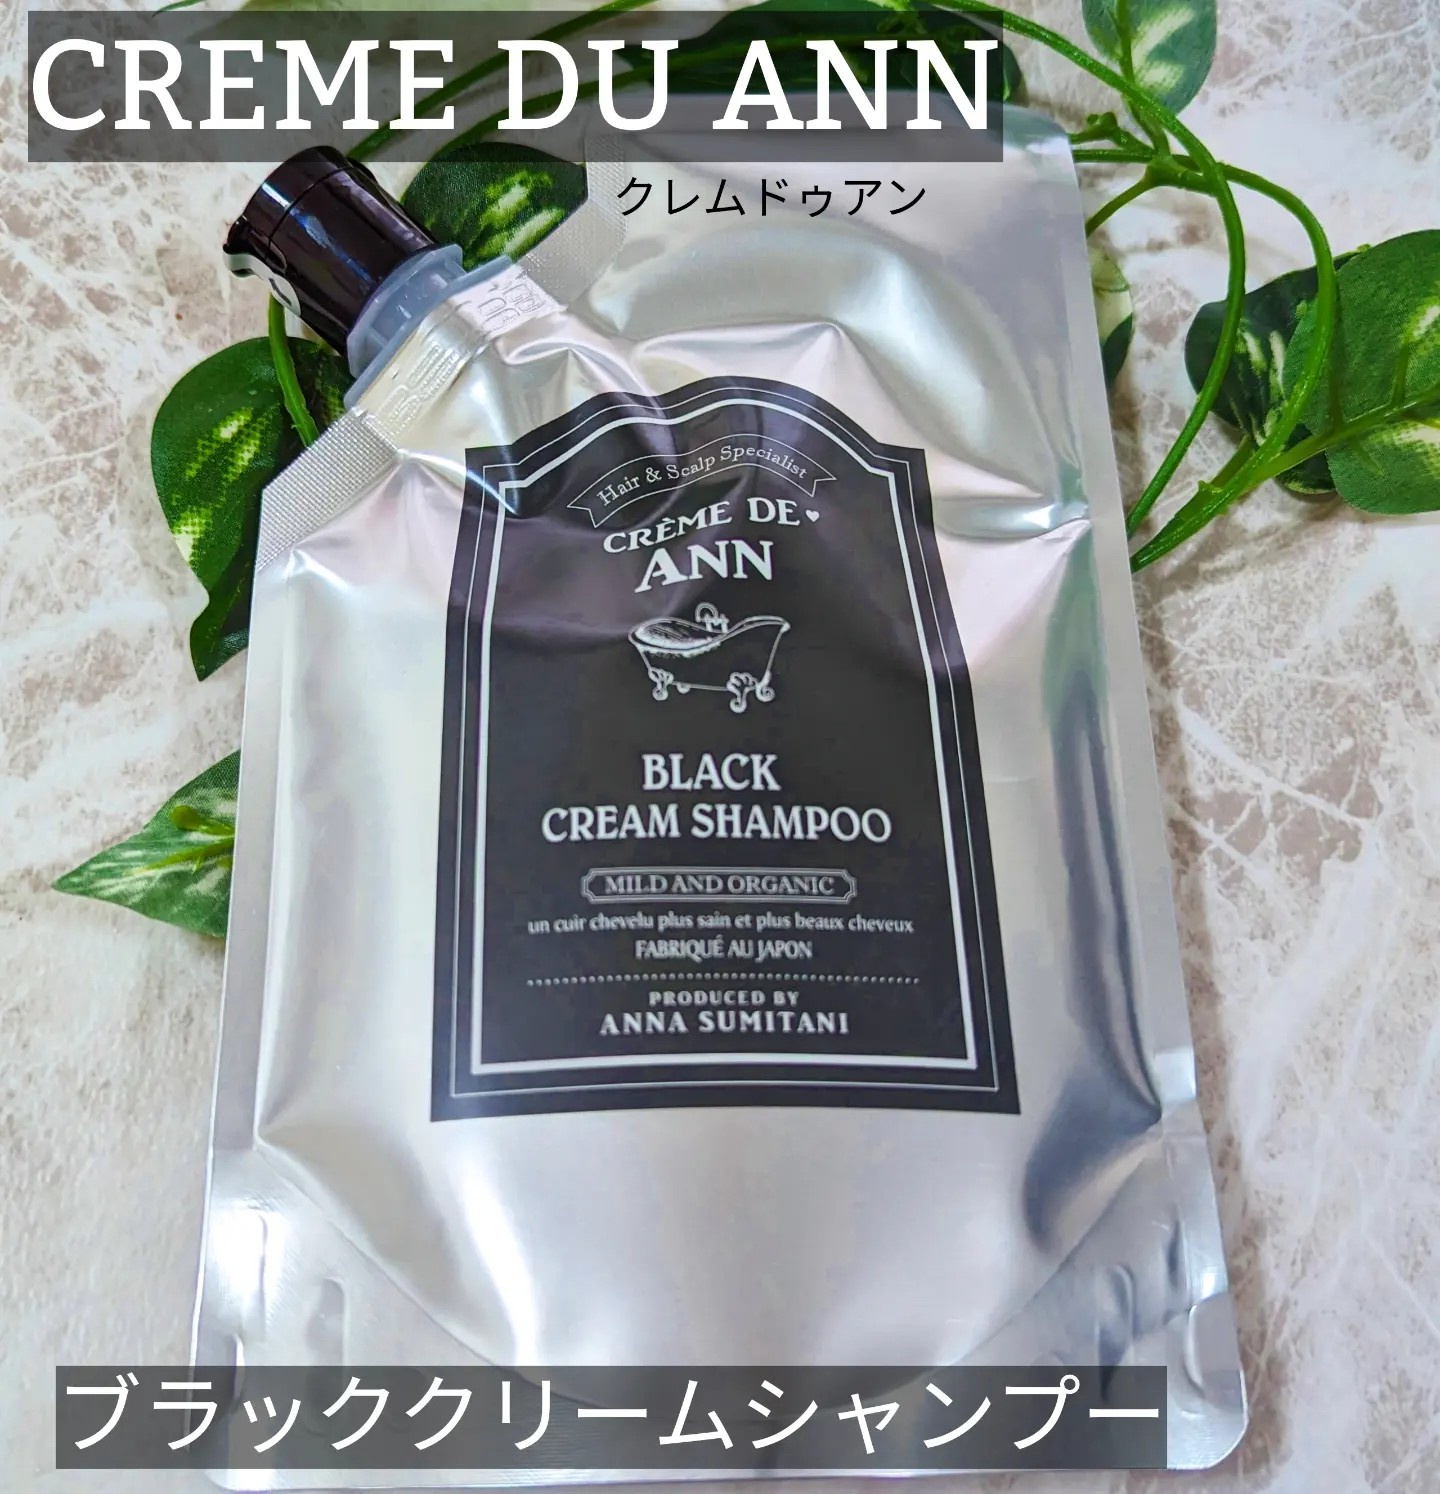 creme de Ann / クレムドアンブラッククリームシャンプー 200gの公式 